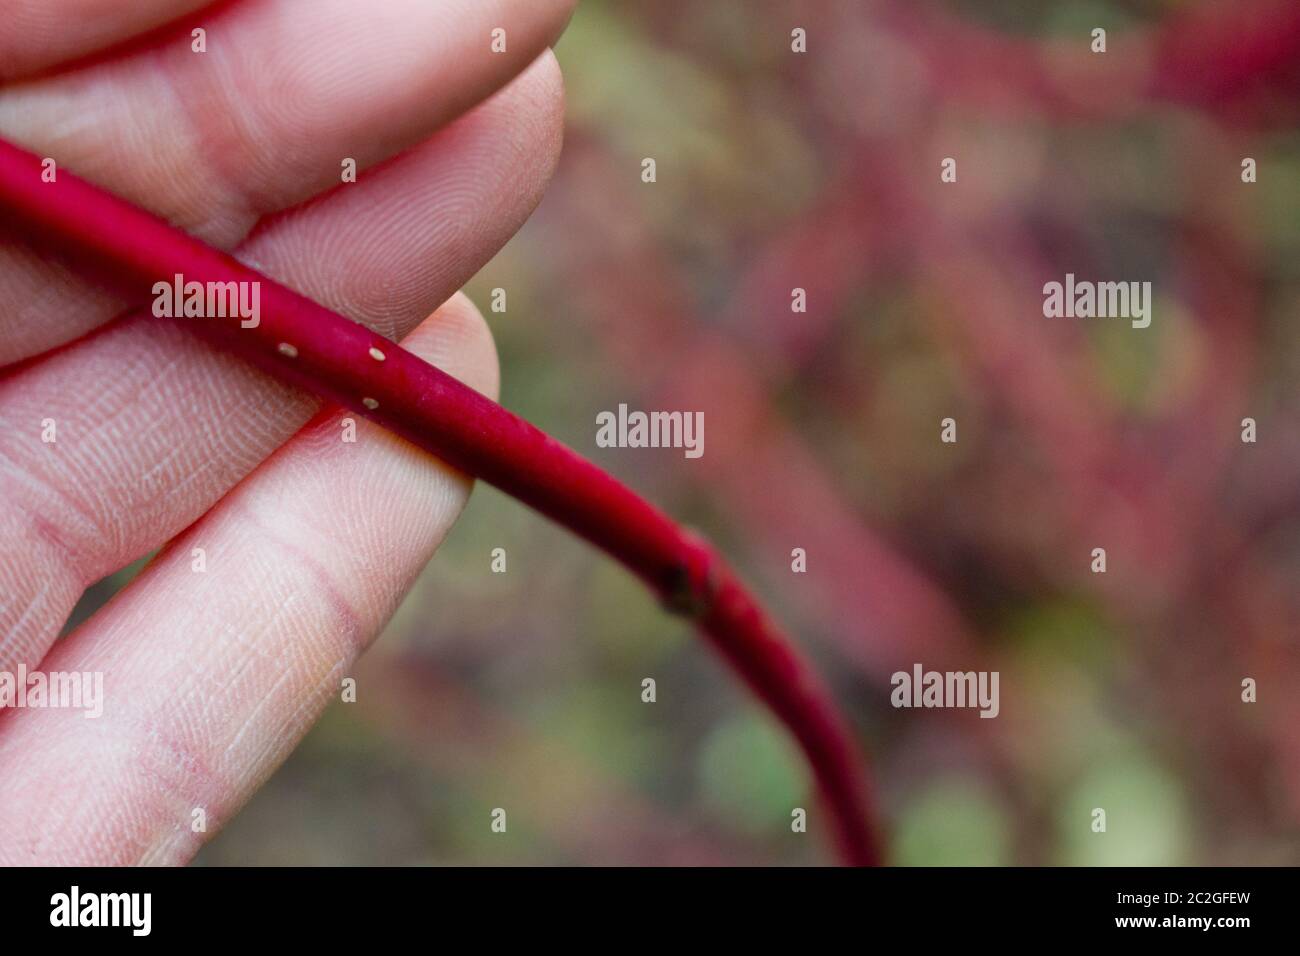 Roter Dogwood-Baum. Zweig in einer Hand dargestellt. Stockfoto